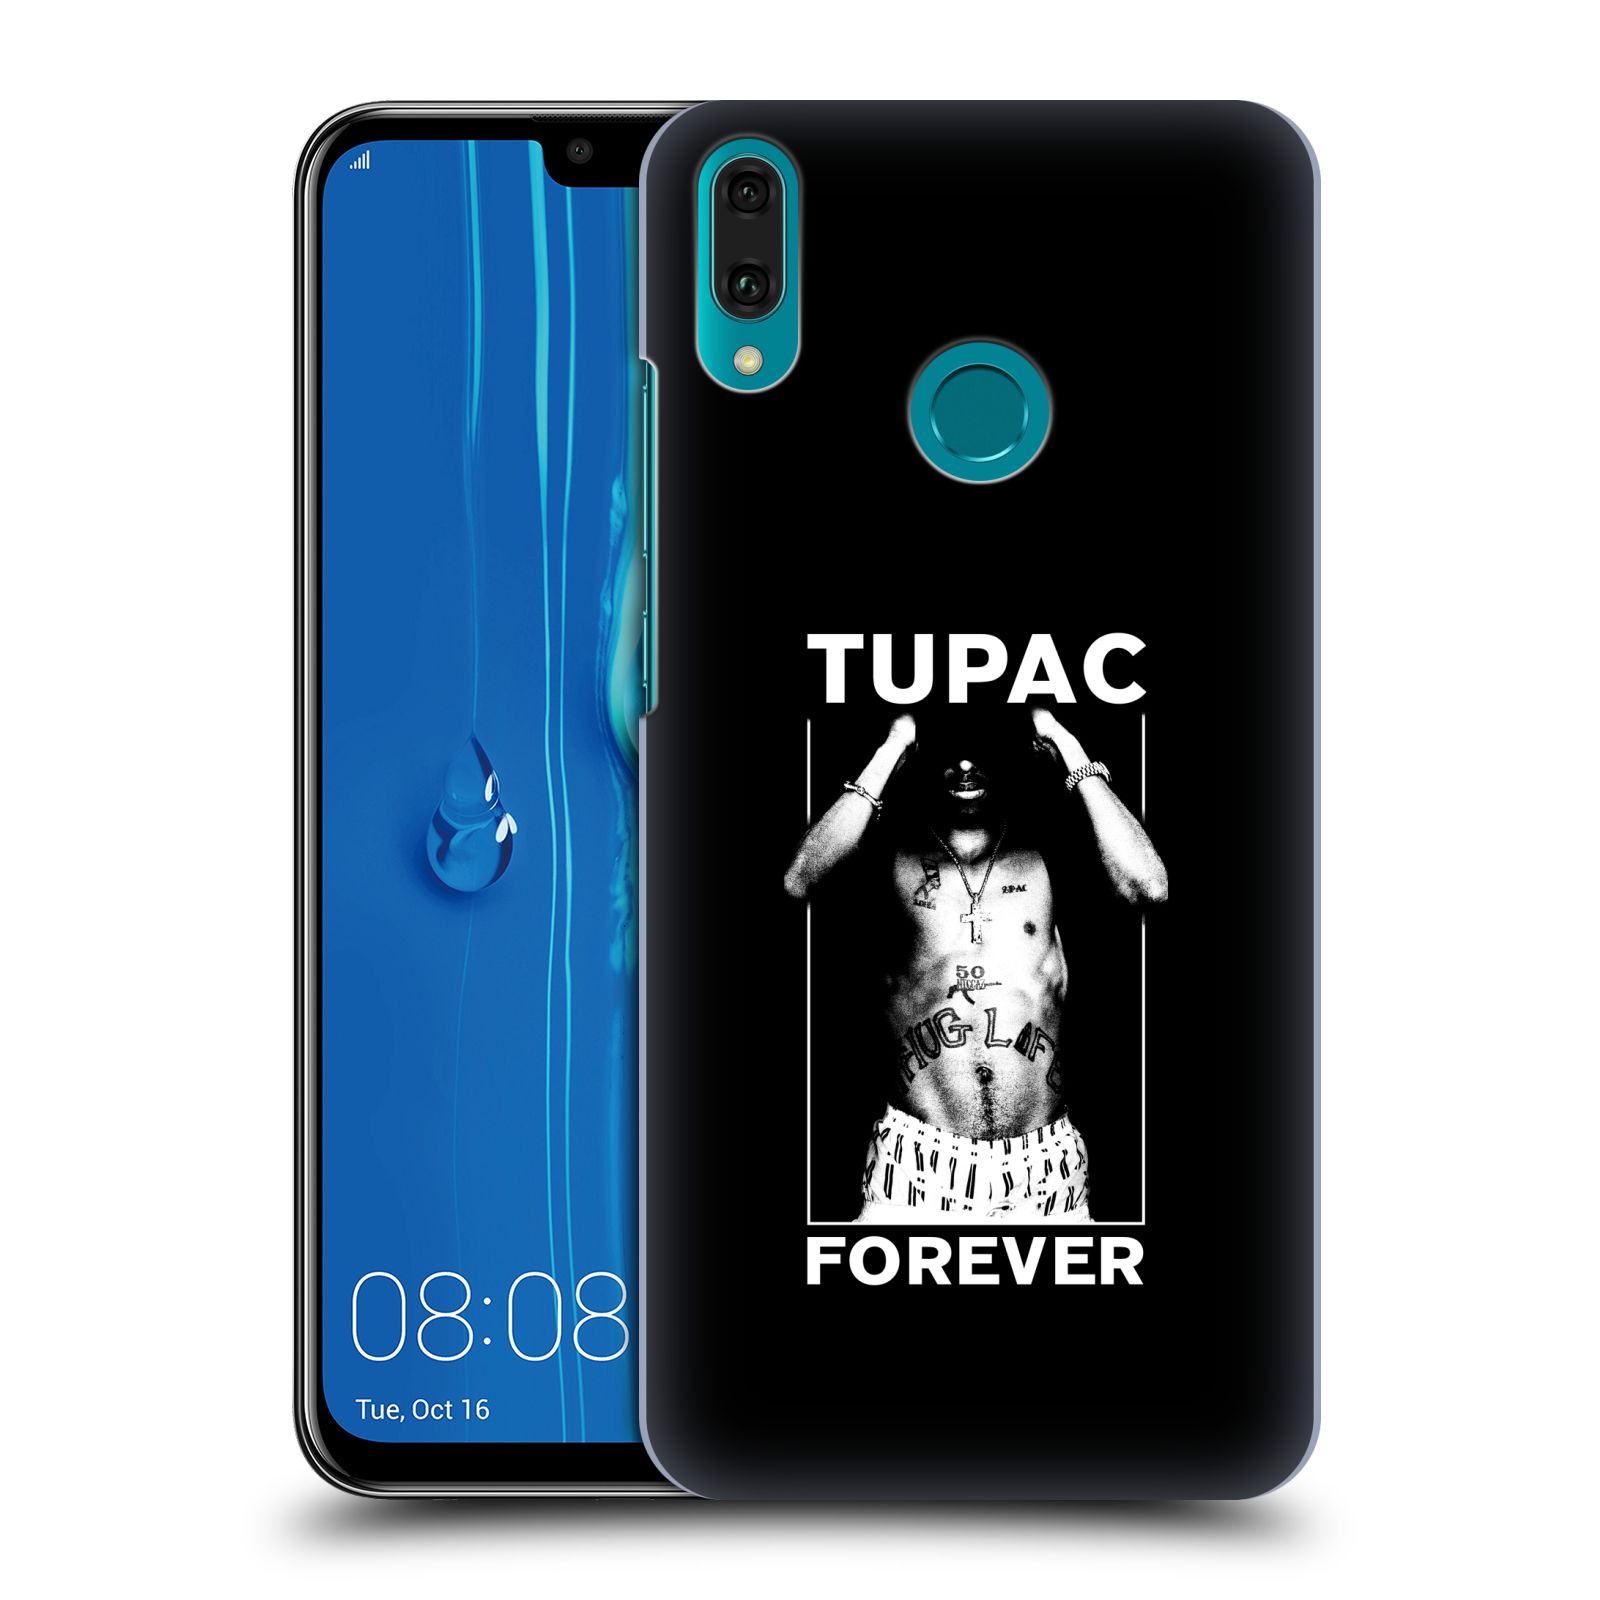 Pouzdro na mobil Huawei Y9 2019 - HEAD CASE - Zpěvák rapper Tupac Shakur 2Pac bílý popisek FOREVER